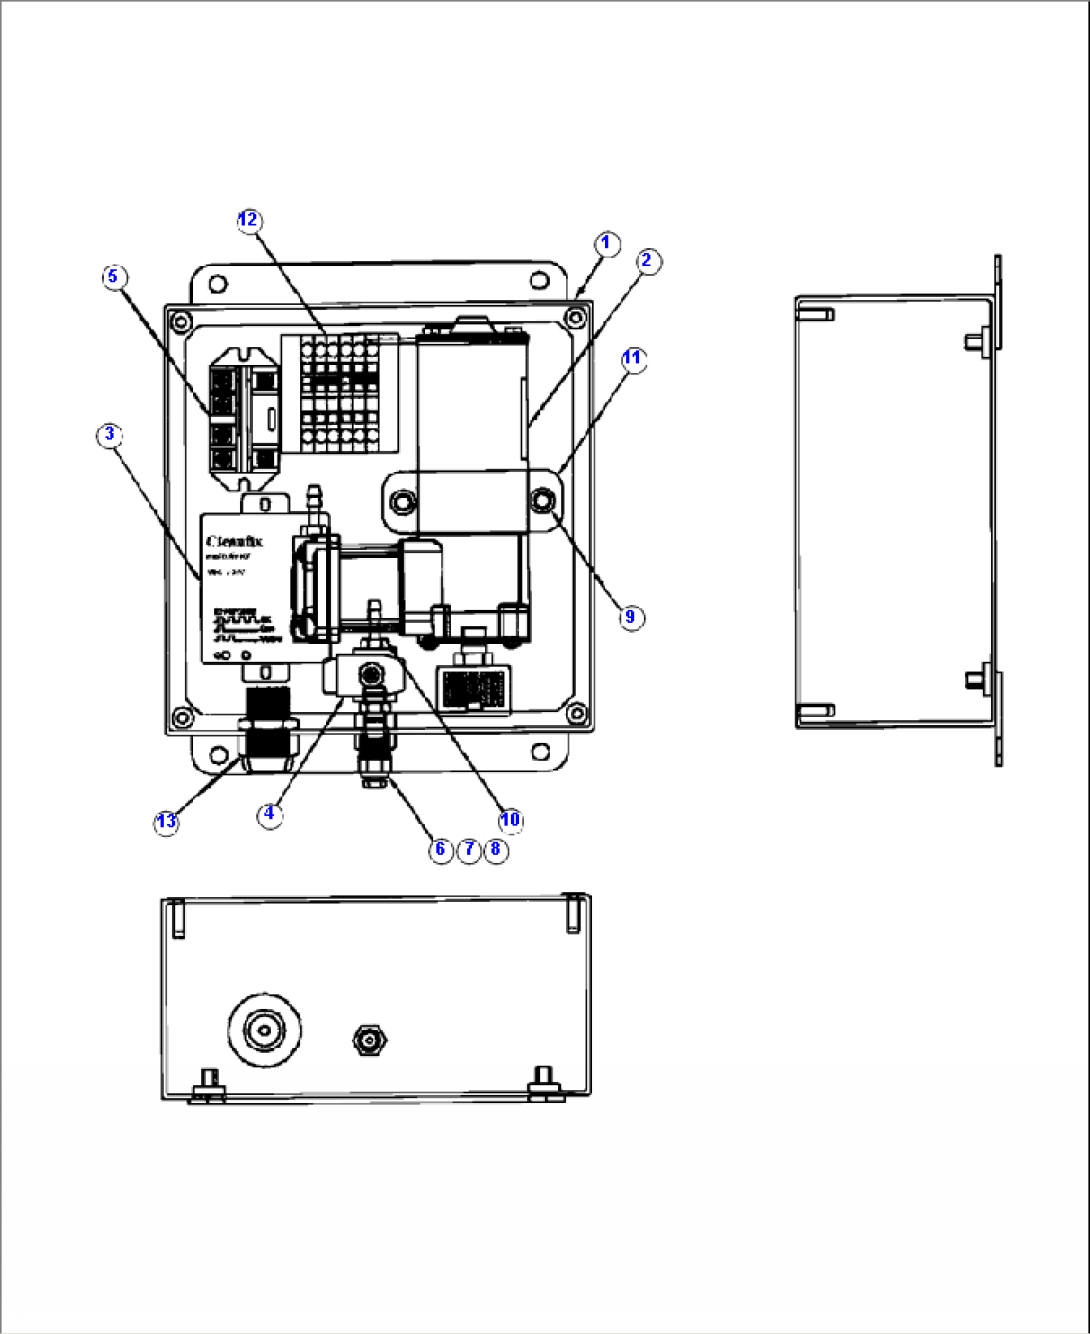 E0501-01A0 REVERSIBLE FAN 24V CONTROL BOX (S/N A10001-A10010 )